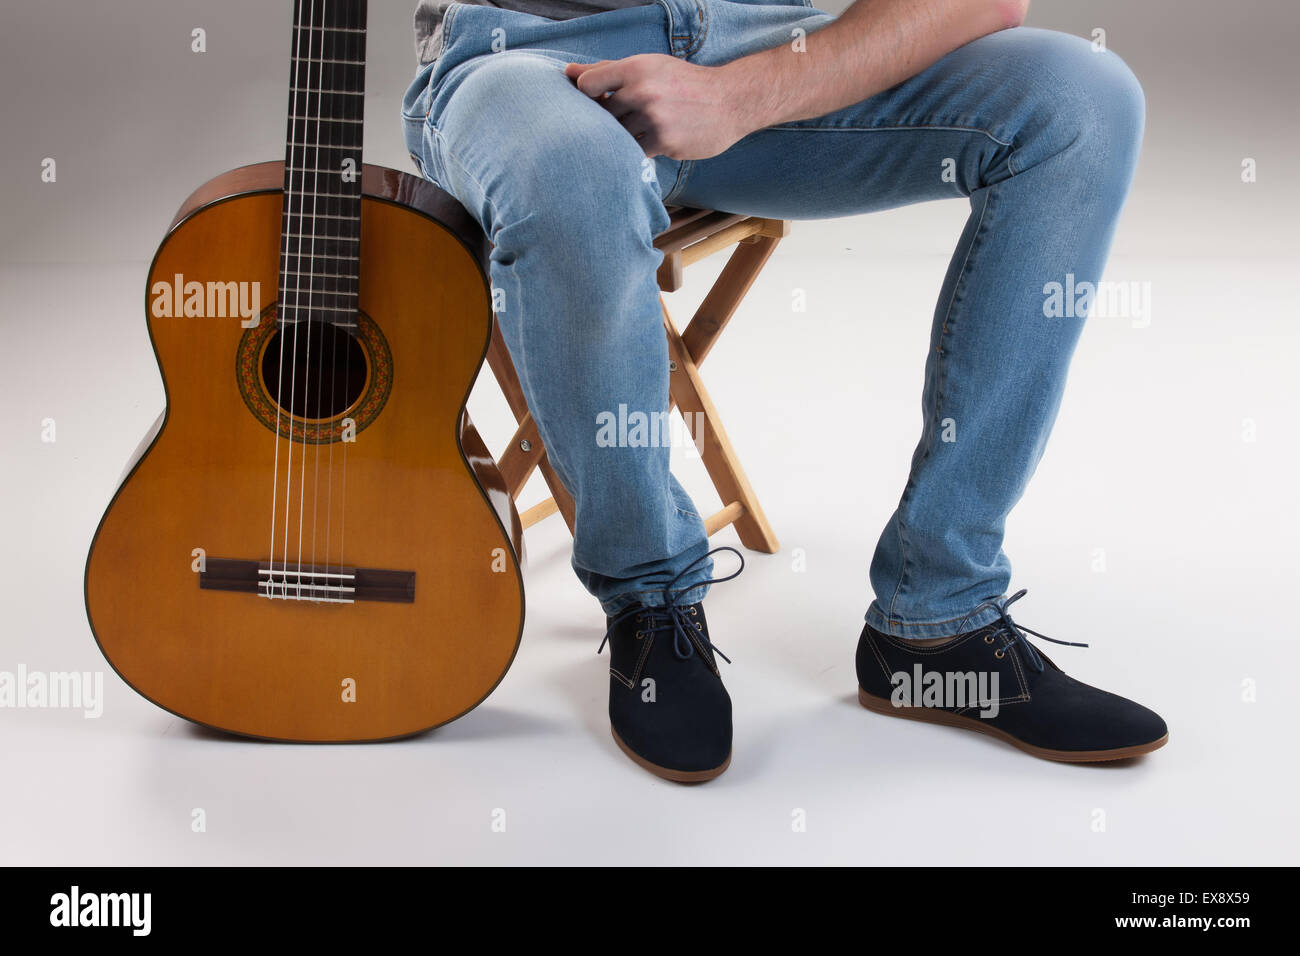 Uomo uomini studio maschio jeans denim di sfondo dell'oggetto suonare la chitarra parte del corpo dello strumento musicale gruppo isolato di stringa scarpe arte collo Foto Stock